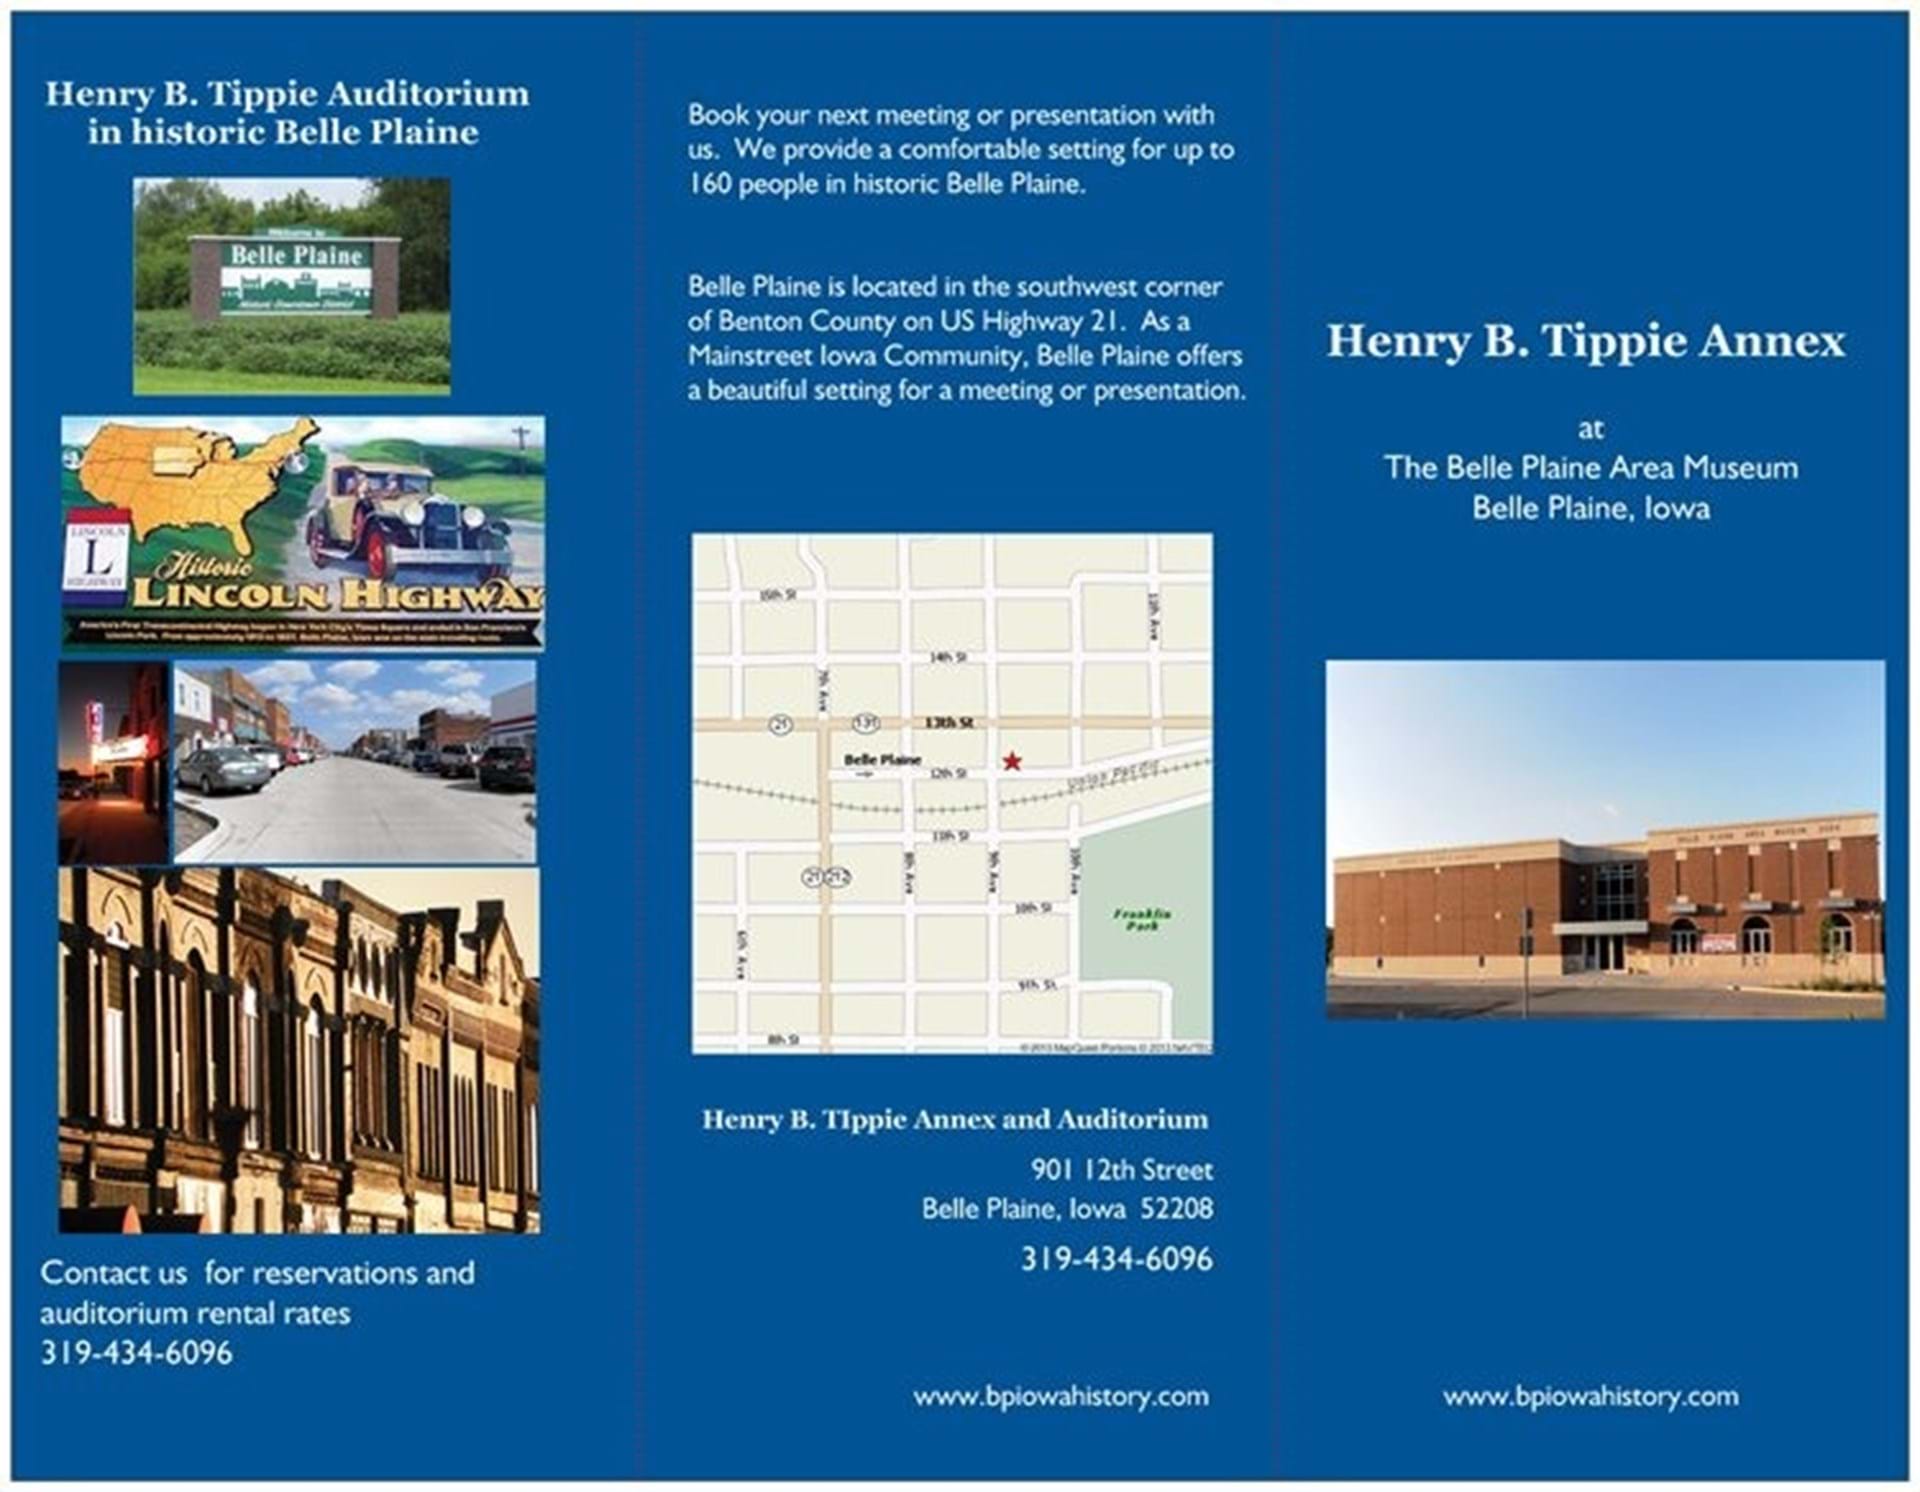 Henry Tippie Annex information